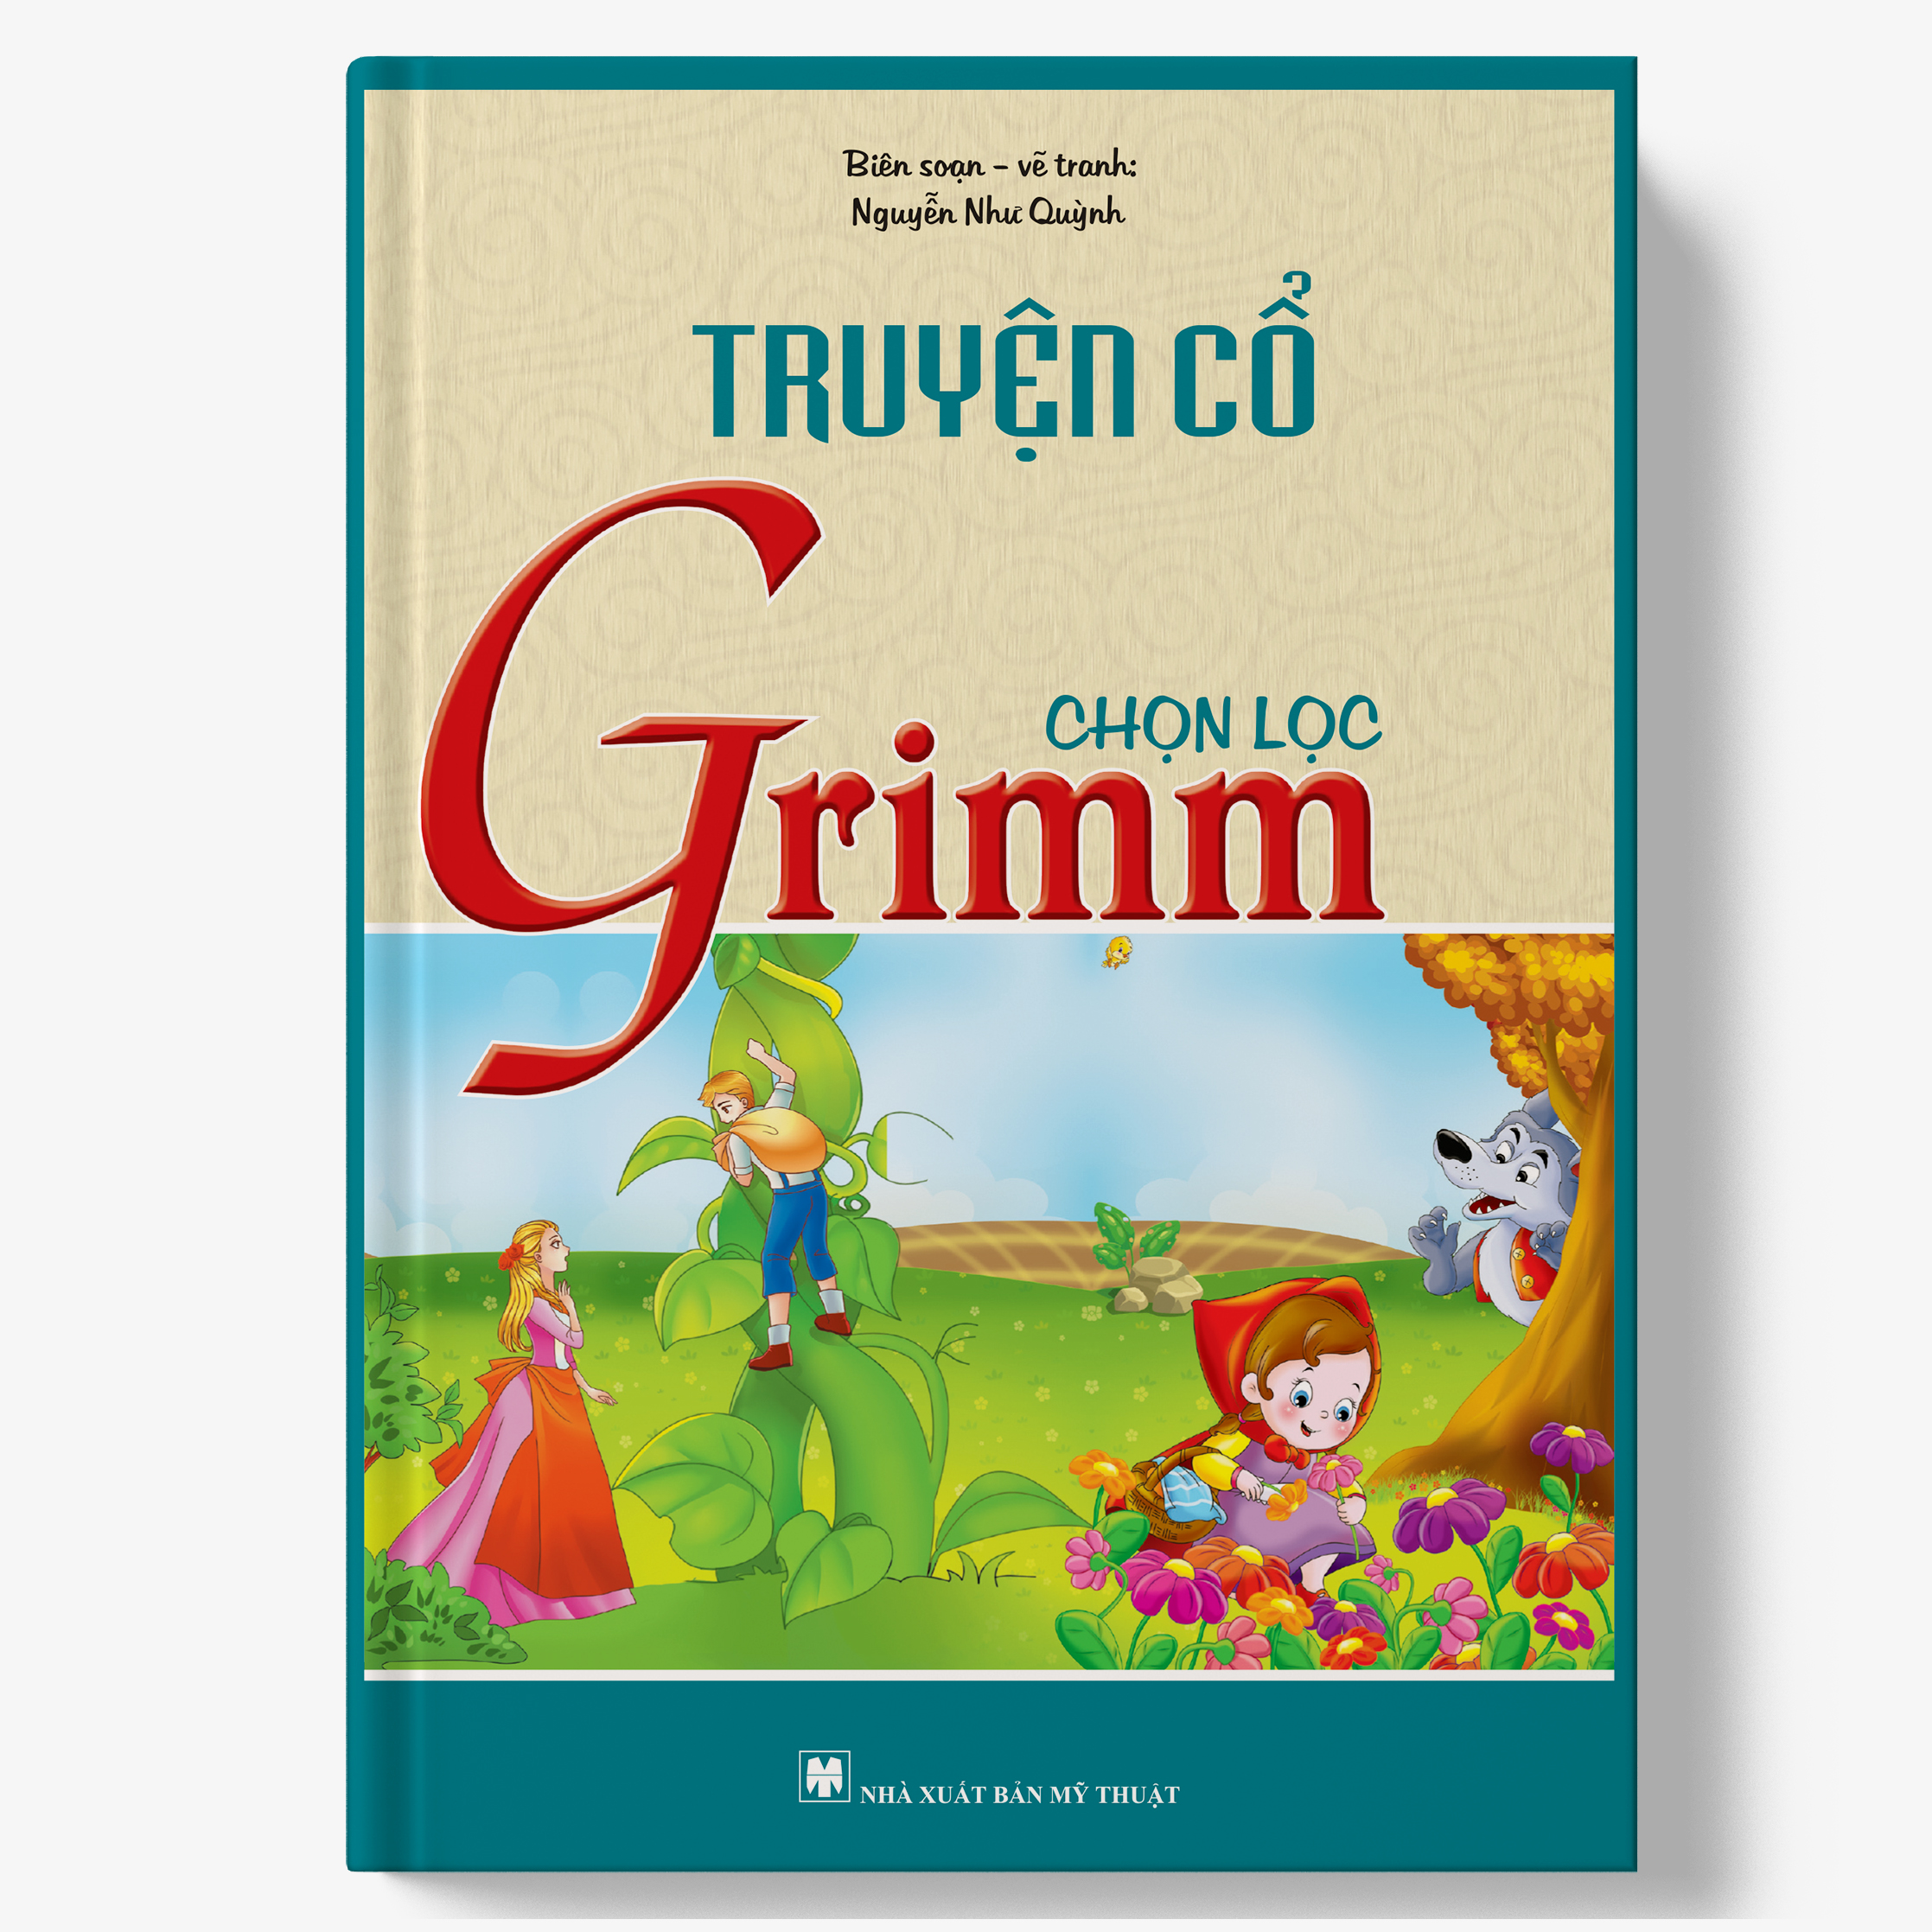 Truyện Cổ Grimm chọn lọc (bìa cứng)